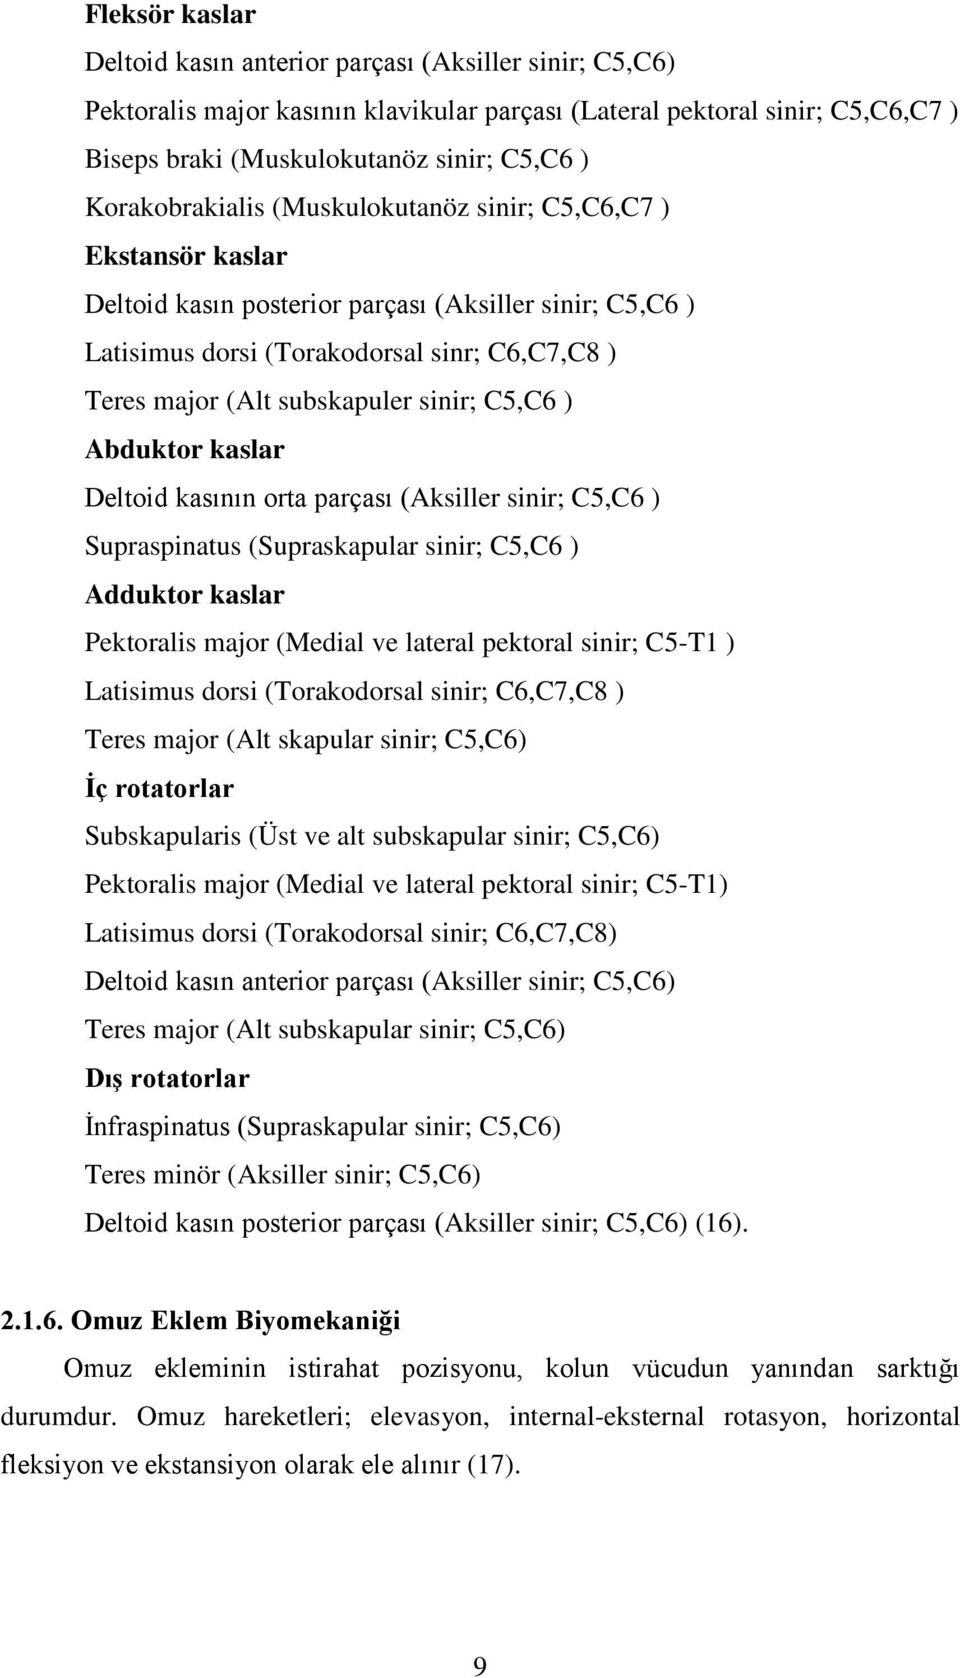 sinir; C5,C6 ) Abduktor kaslar Deltoid kasının orta parçası (Aksiller sinir; C5,C6 ) Supraspinatus (Supraskapular sinir; C5,C6 ) Adduktor kaslar Pektoralis major (Medial ve lateral pektoral sinir;